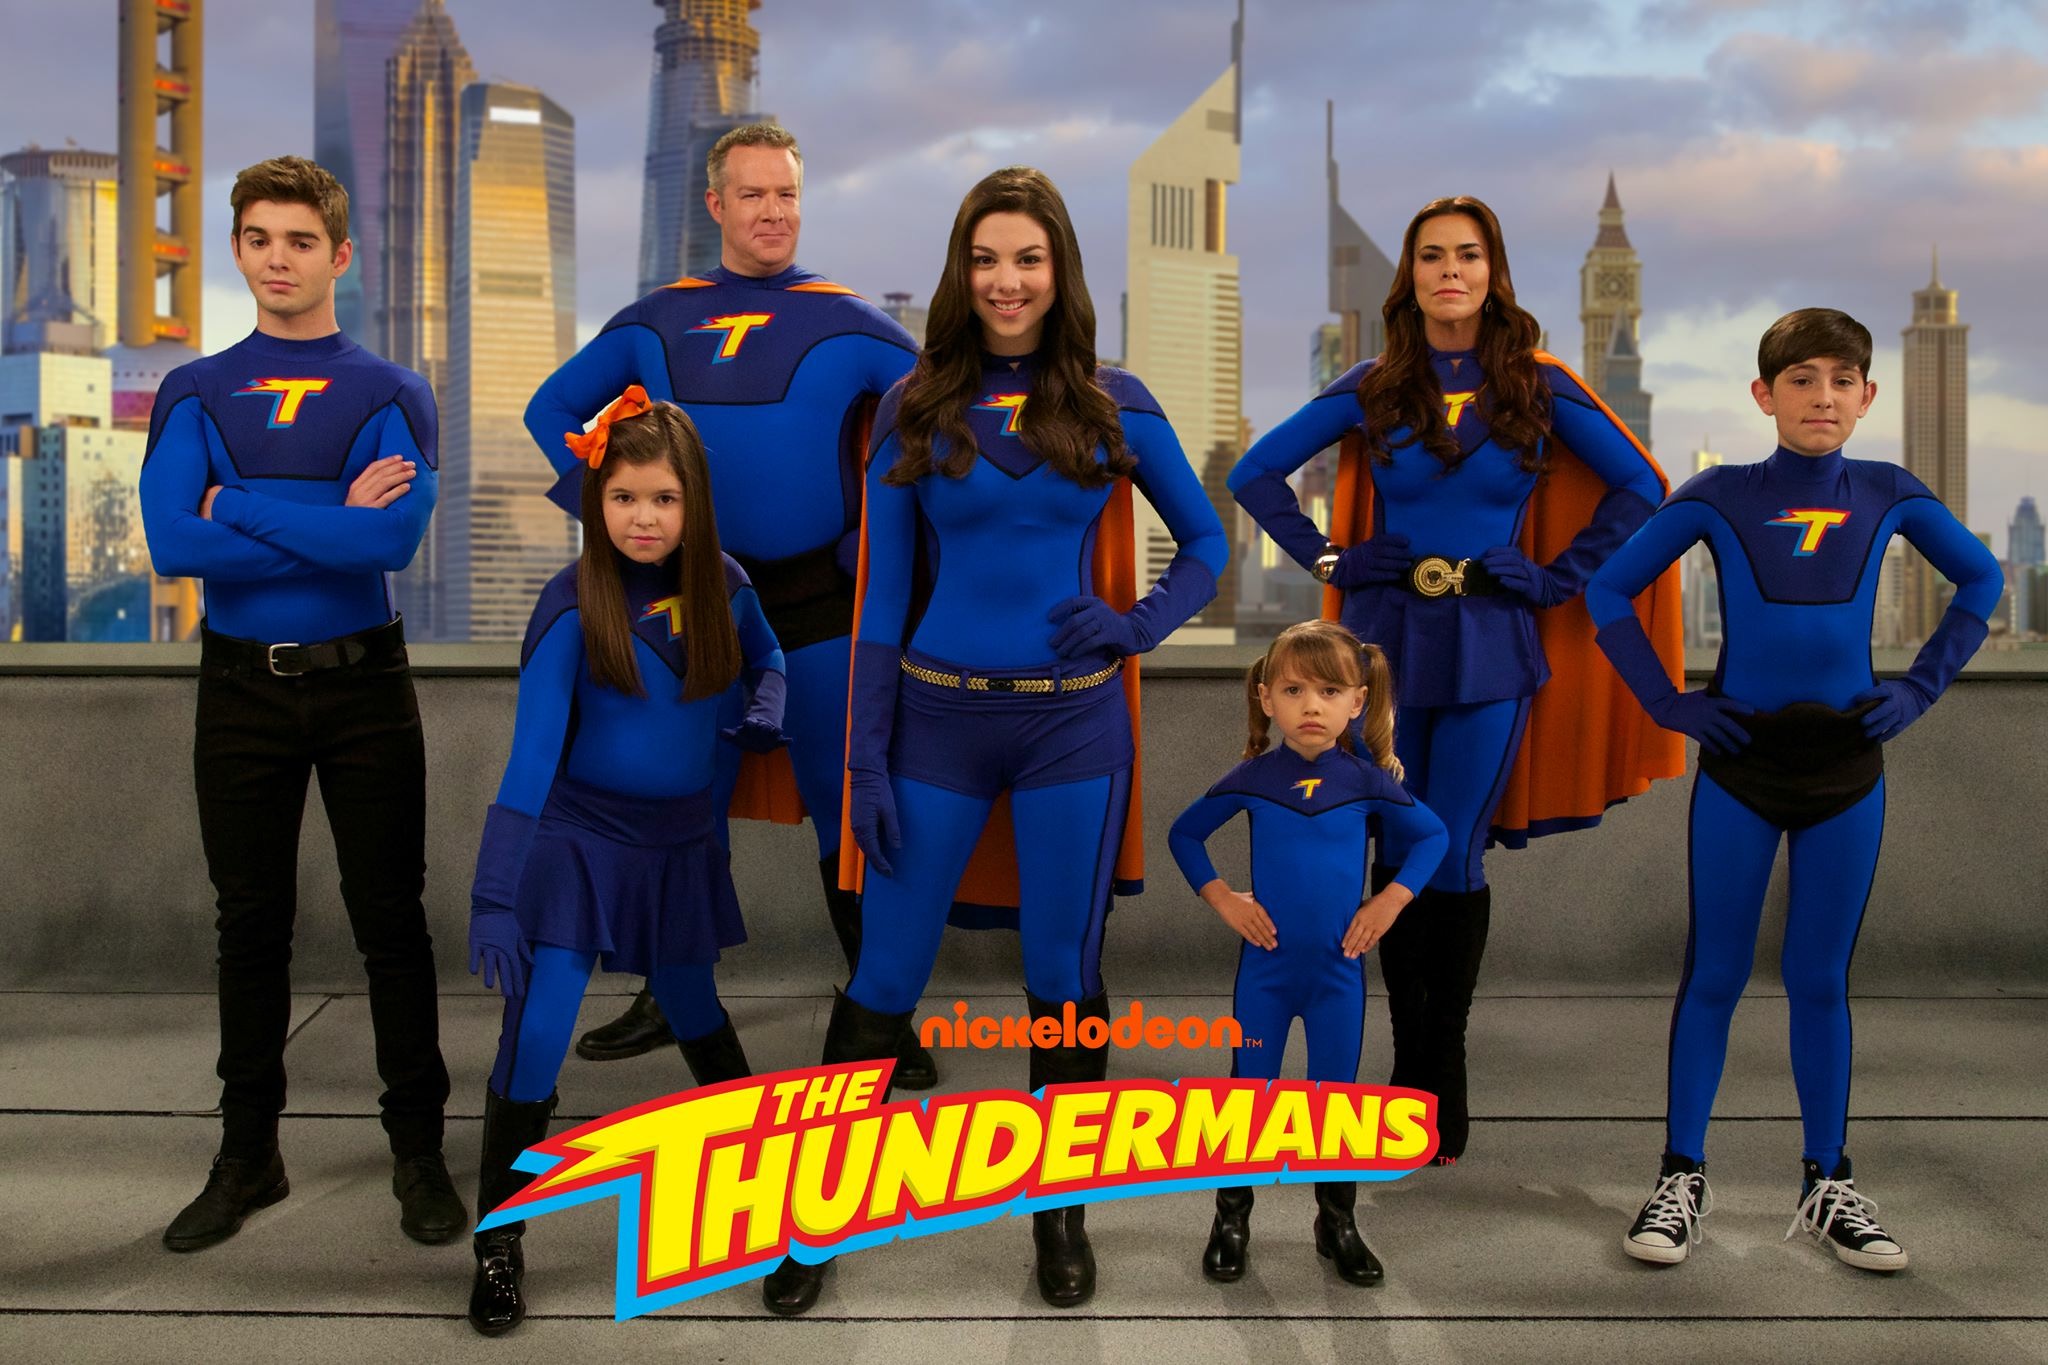 The Thunderman Family